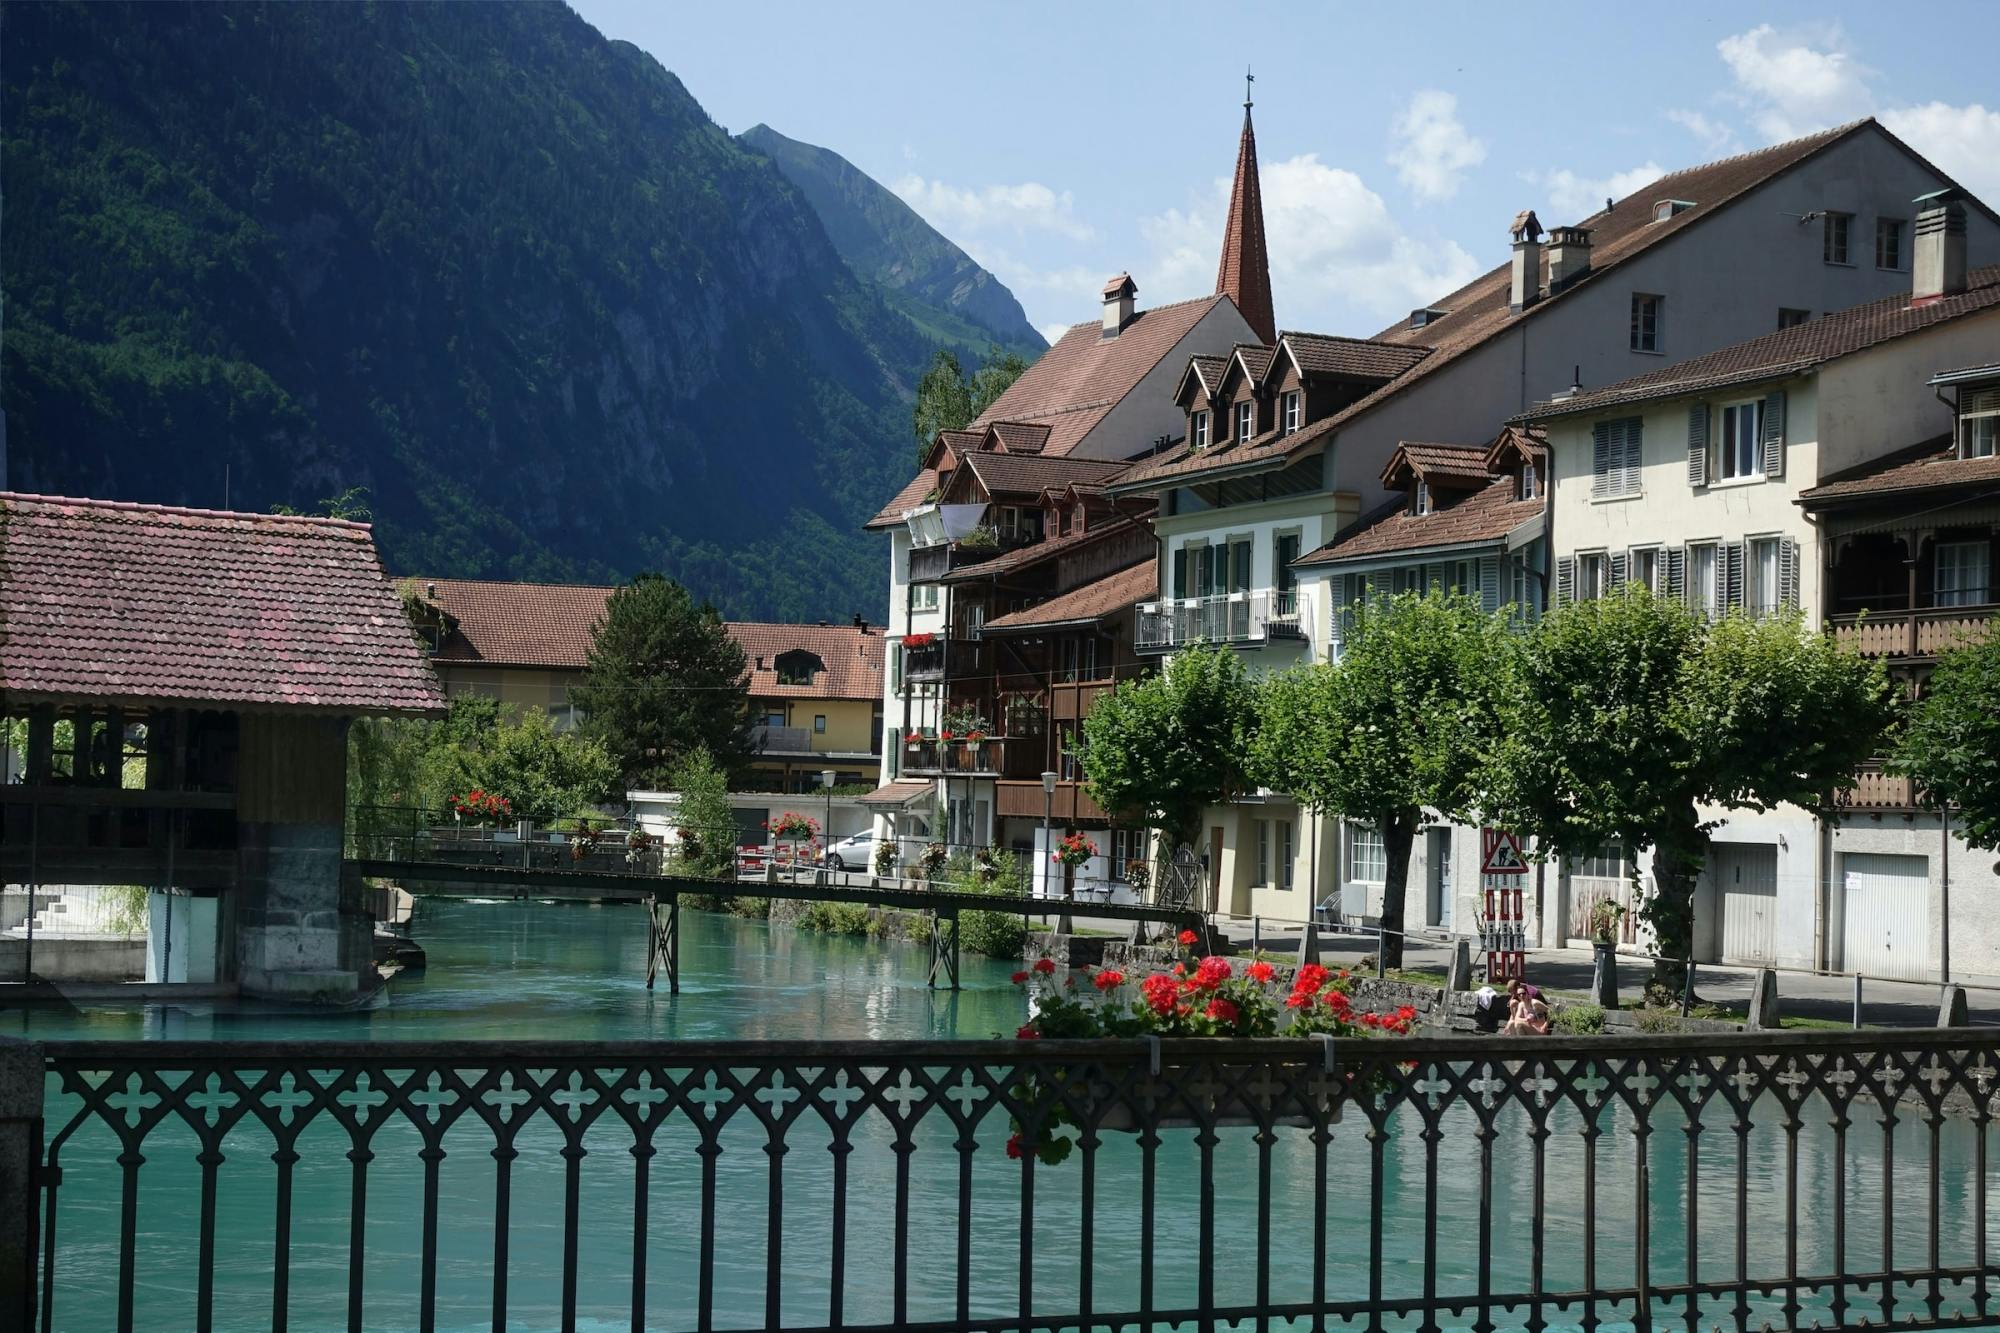 Interlaken wycieczka artystyczna i kulturalna z miejscowym